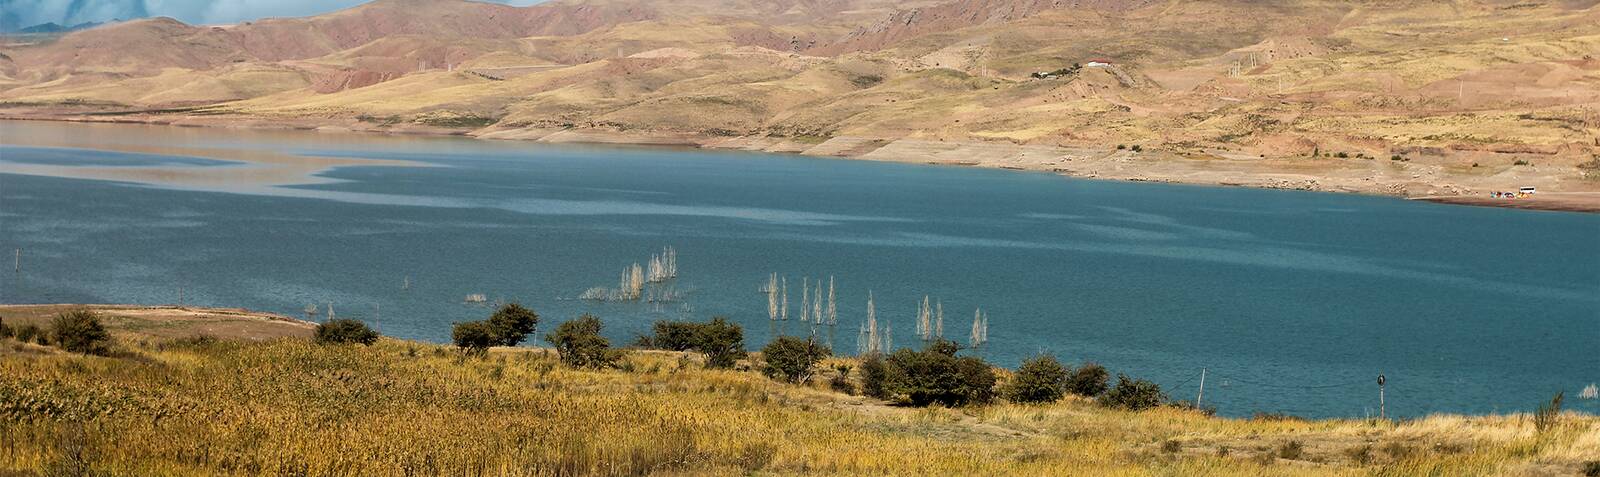 منظره بی نظیر دریاچه سد طالقان